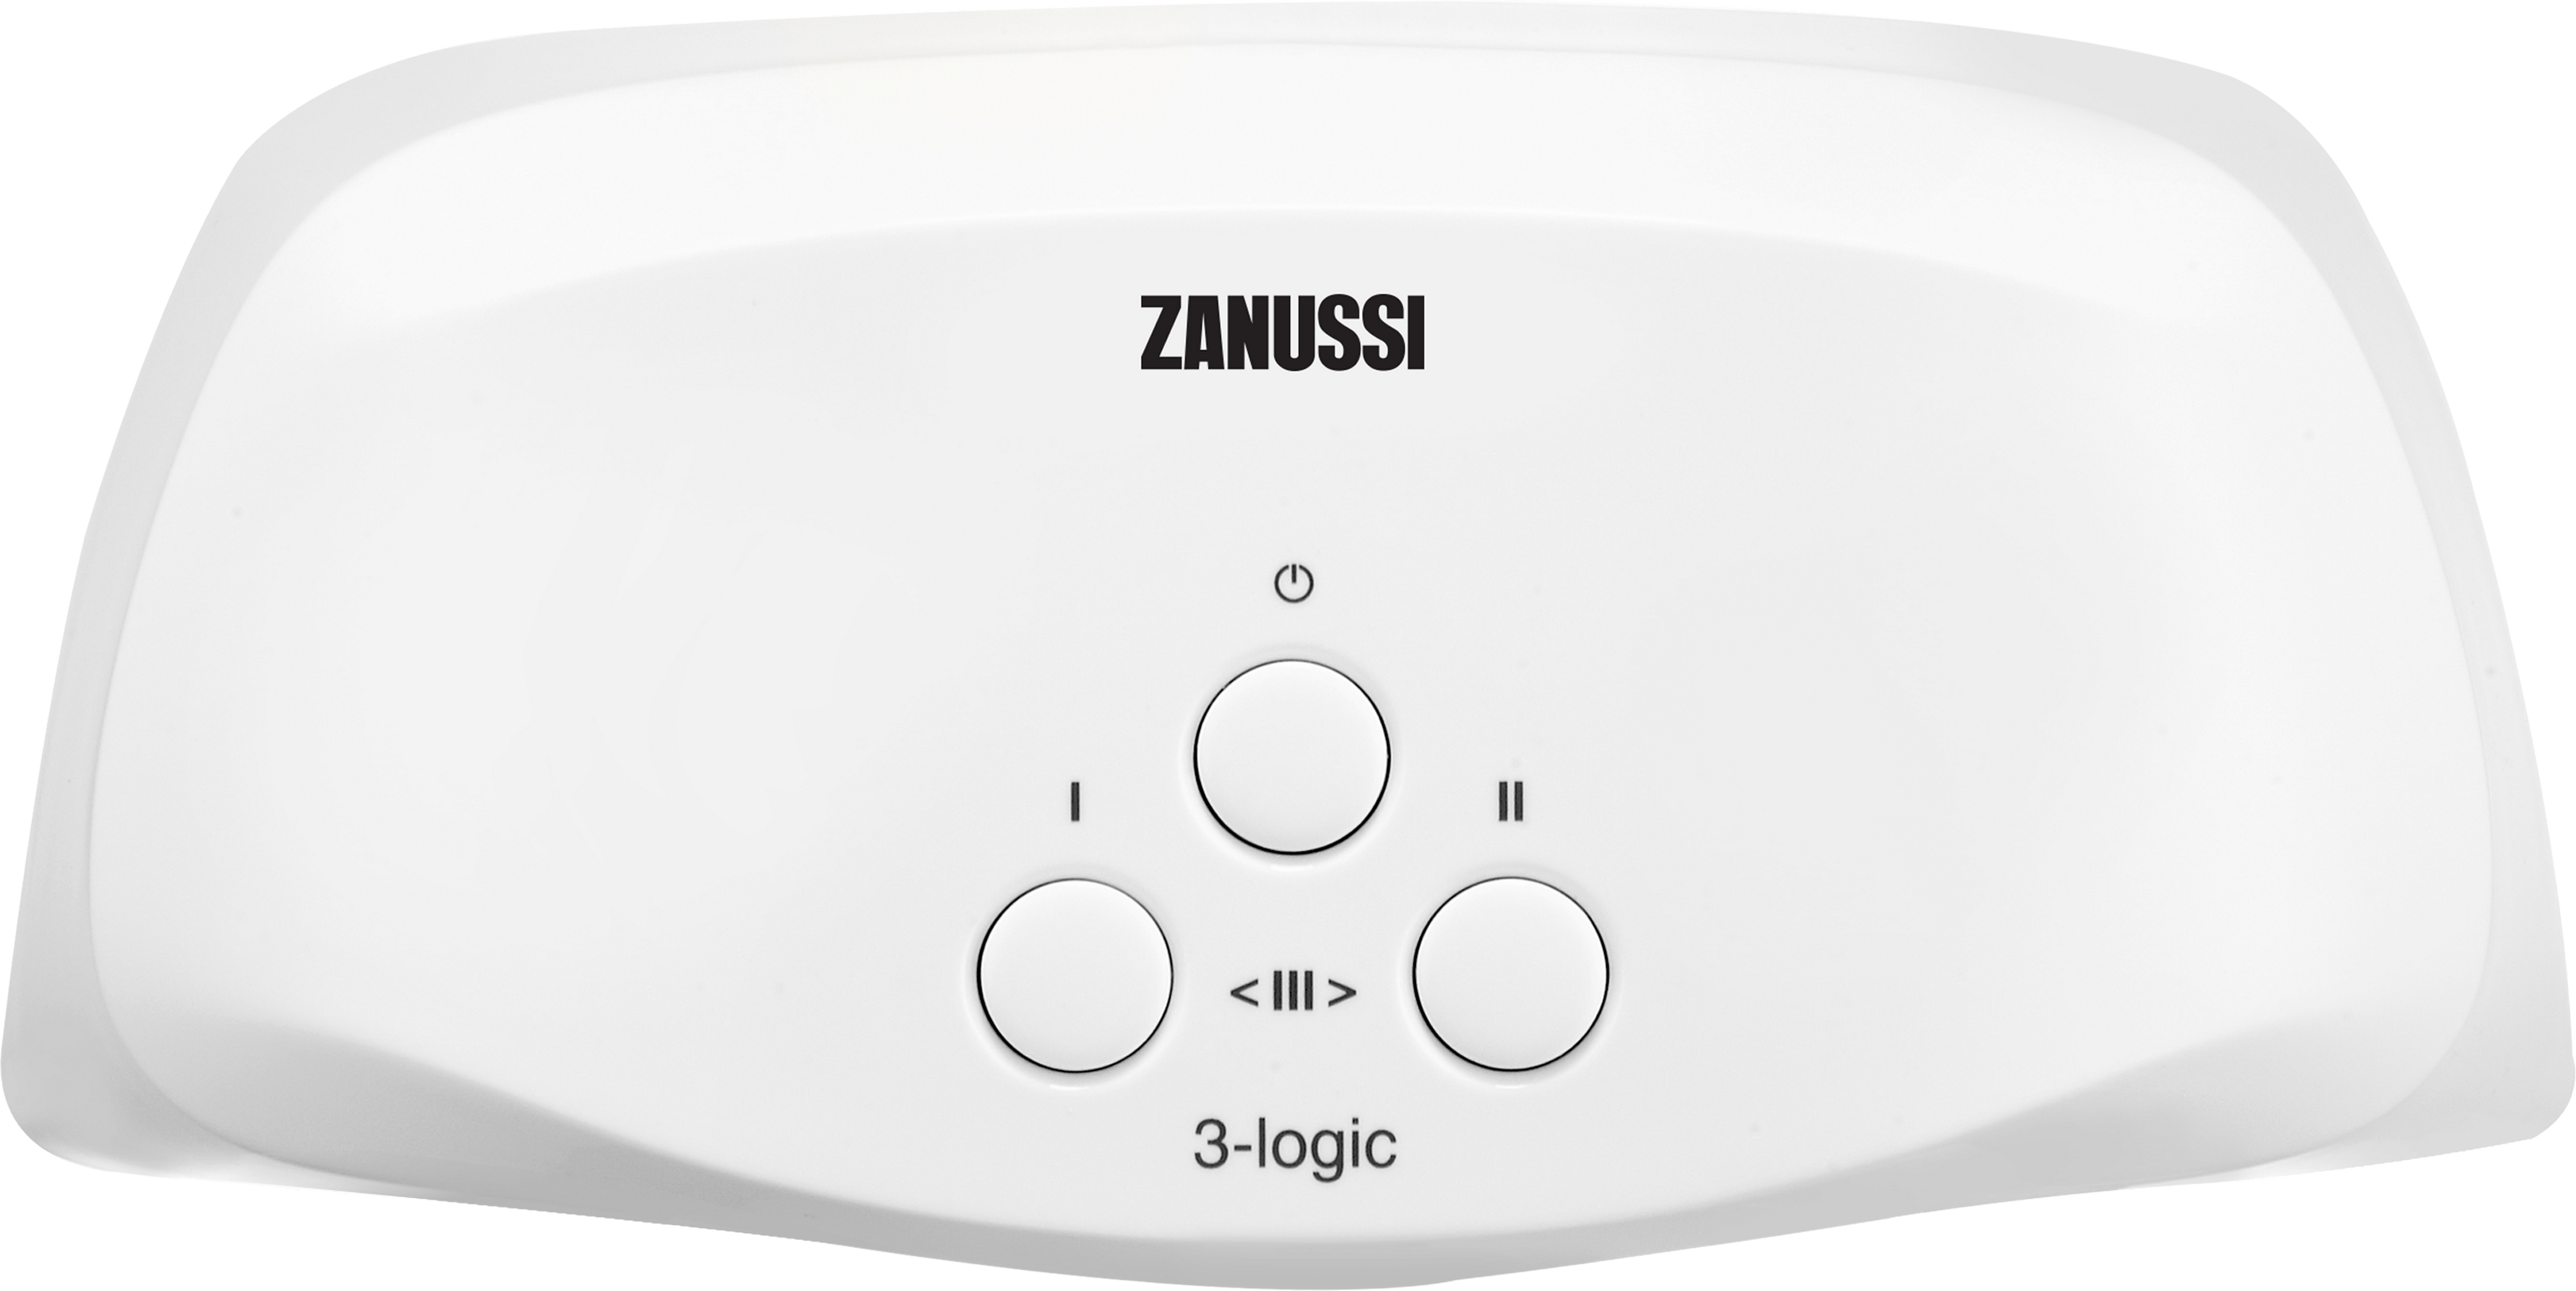 Кран Zanussi водонагреватель Zanussi 3-logic TS (3,5 кВт)